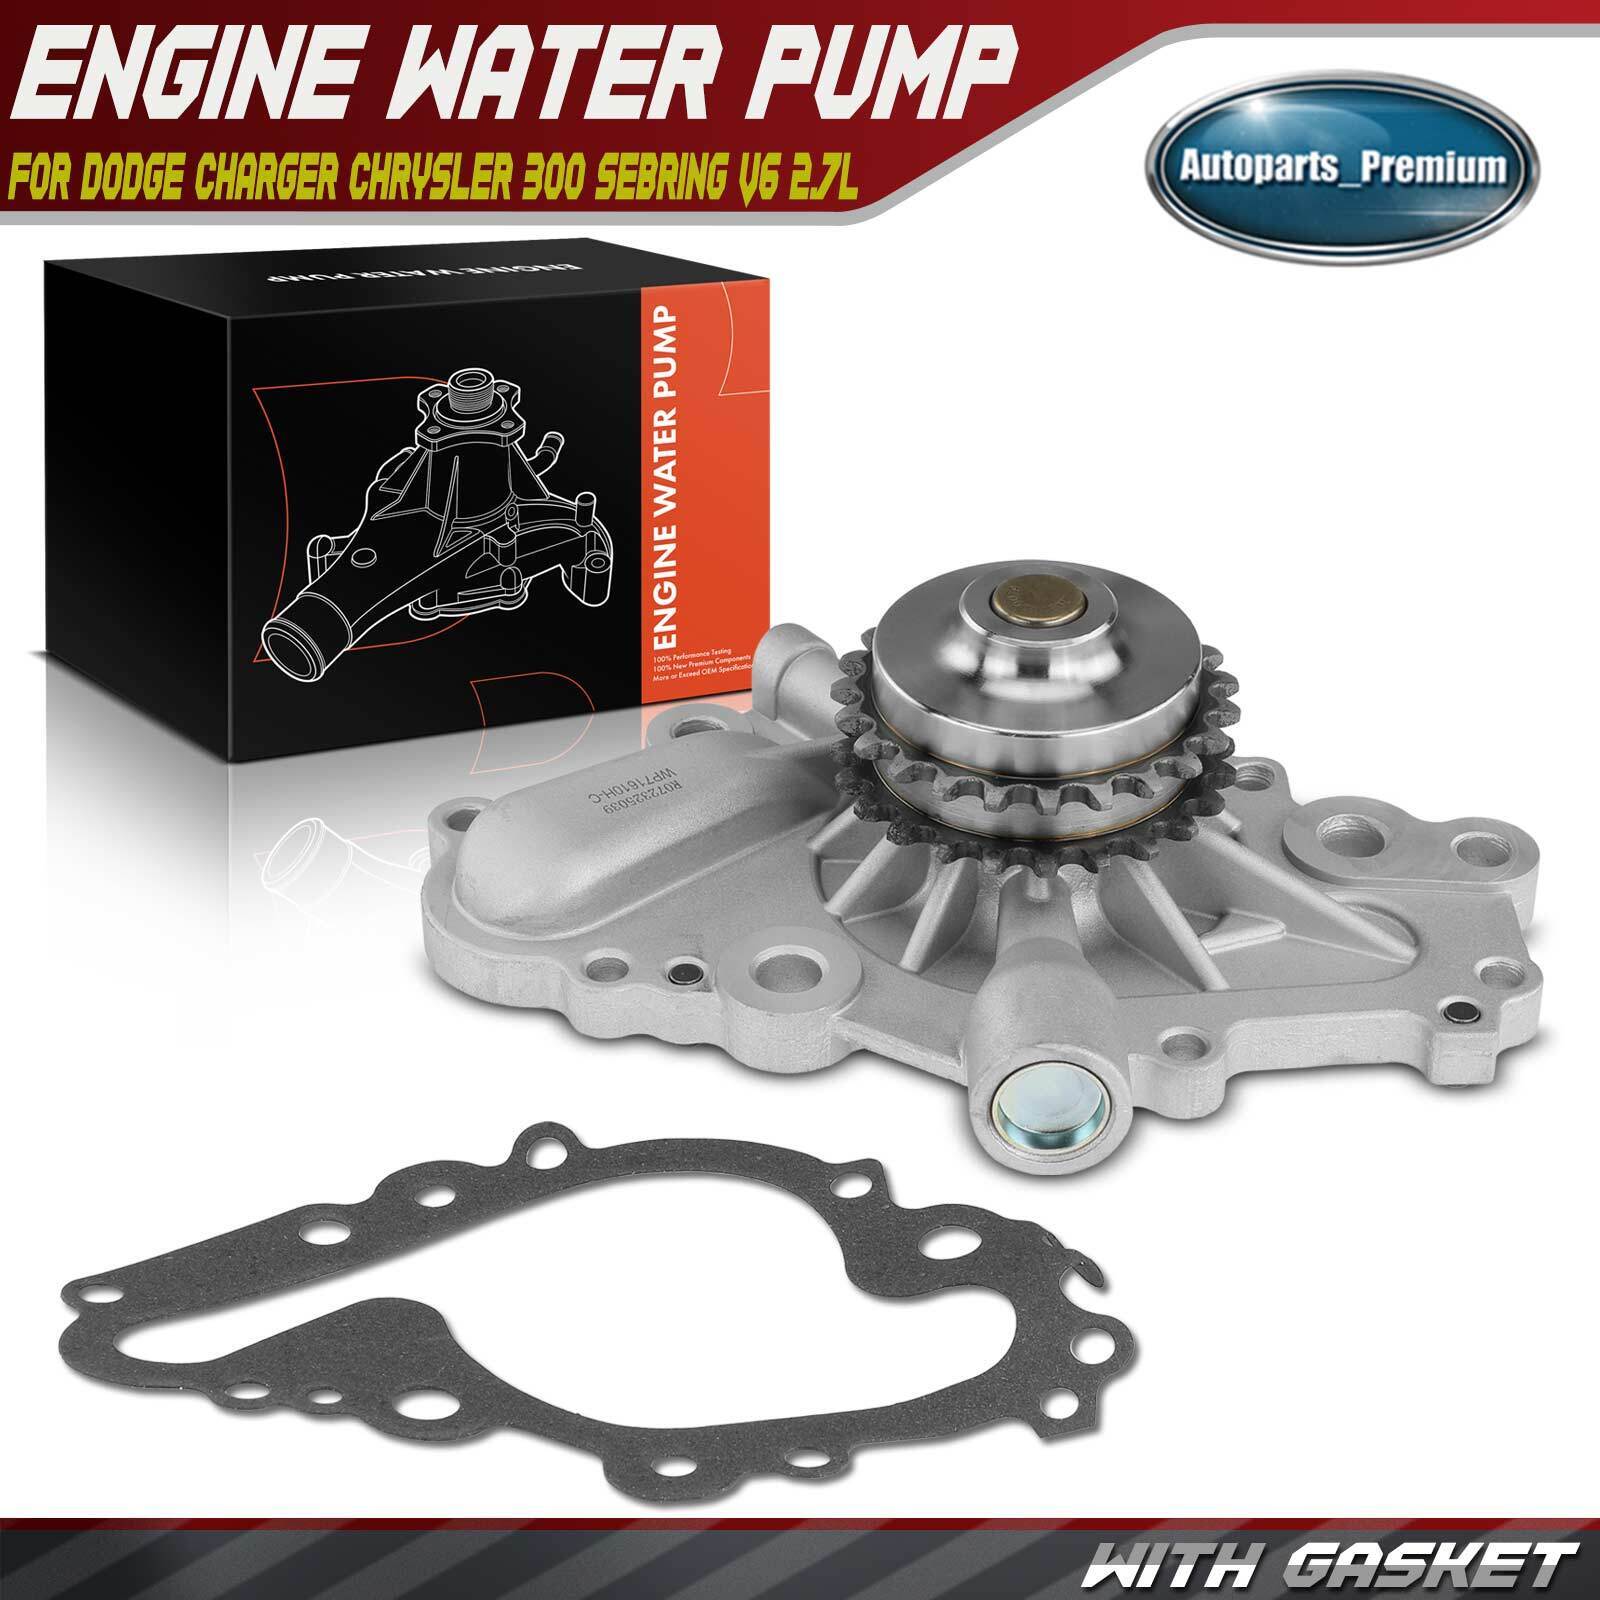 Engine Water Pump for Chrysler 300 Sebring Dodge Charger Magnum Stratus V6 2.7L